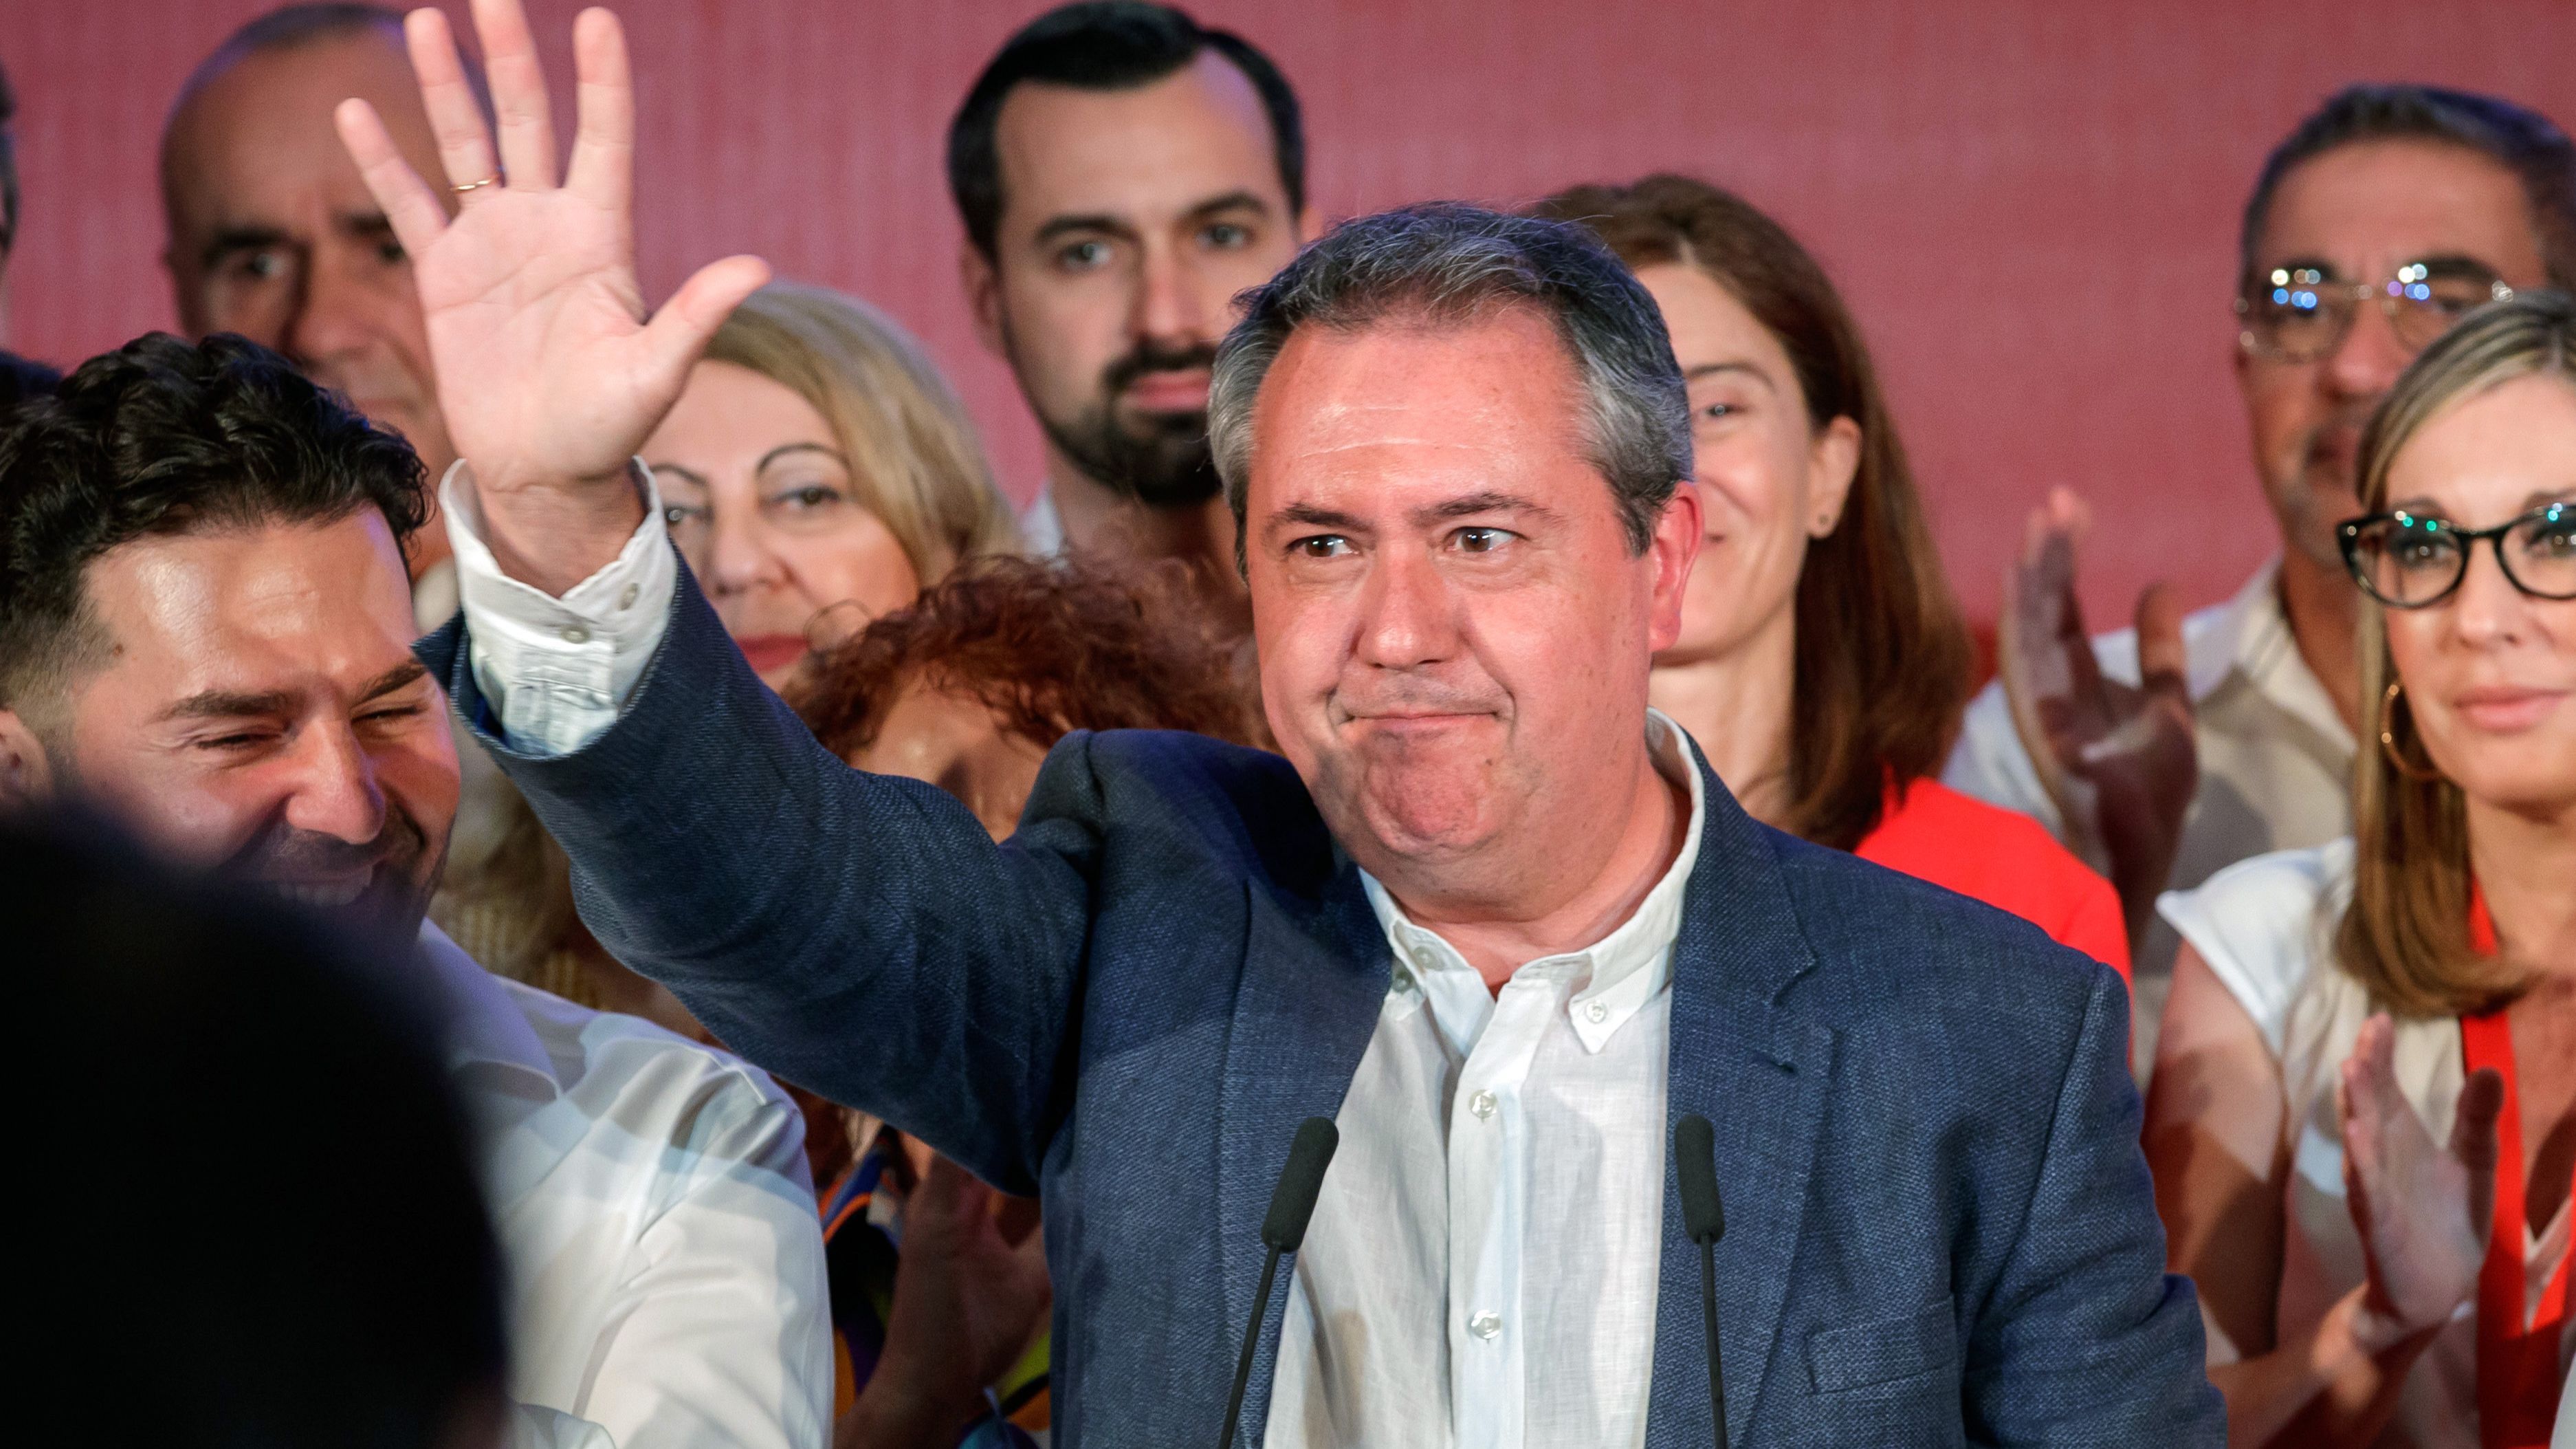 El PSOE-A logra su peor resultado histórico en unas andaluzas lejos del millón de votos de Susana Díaz en 2018